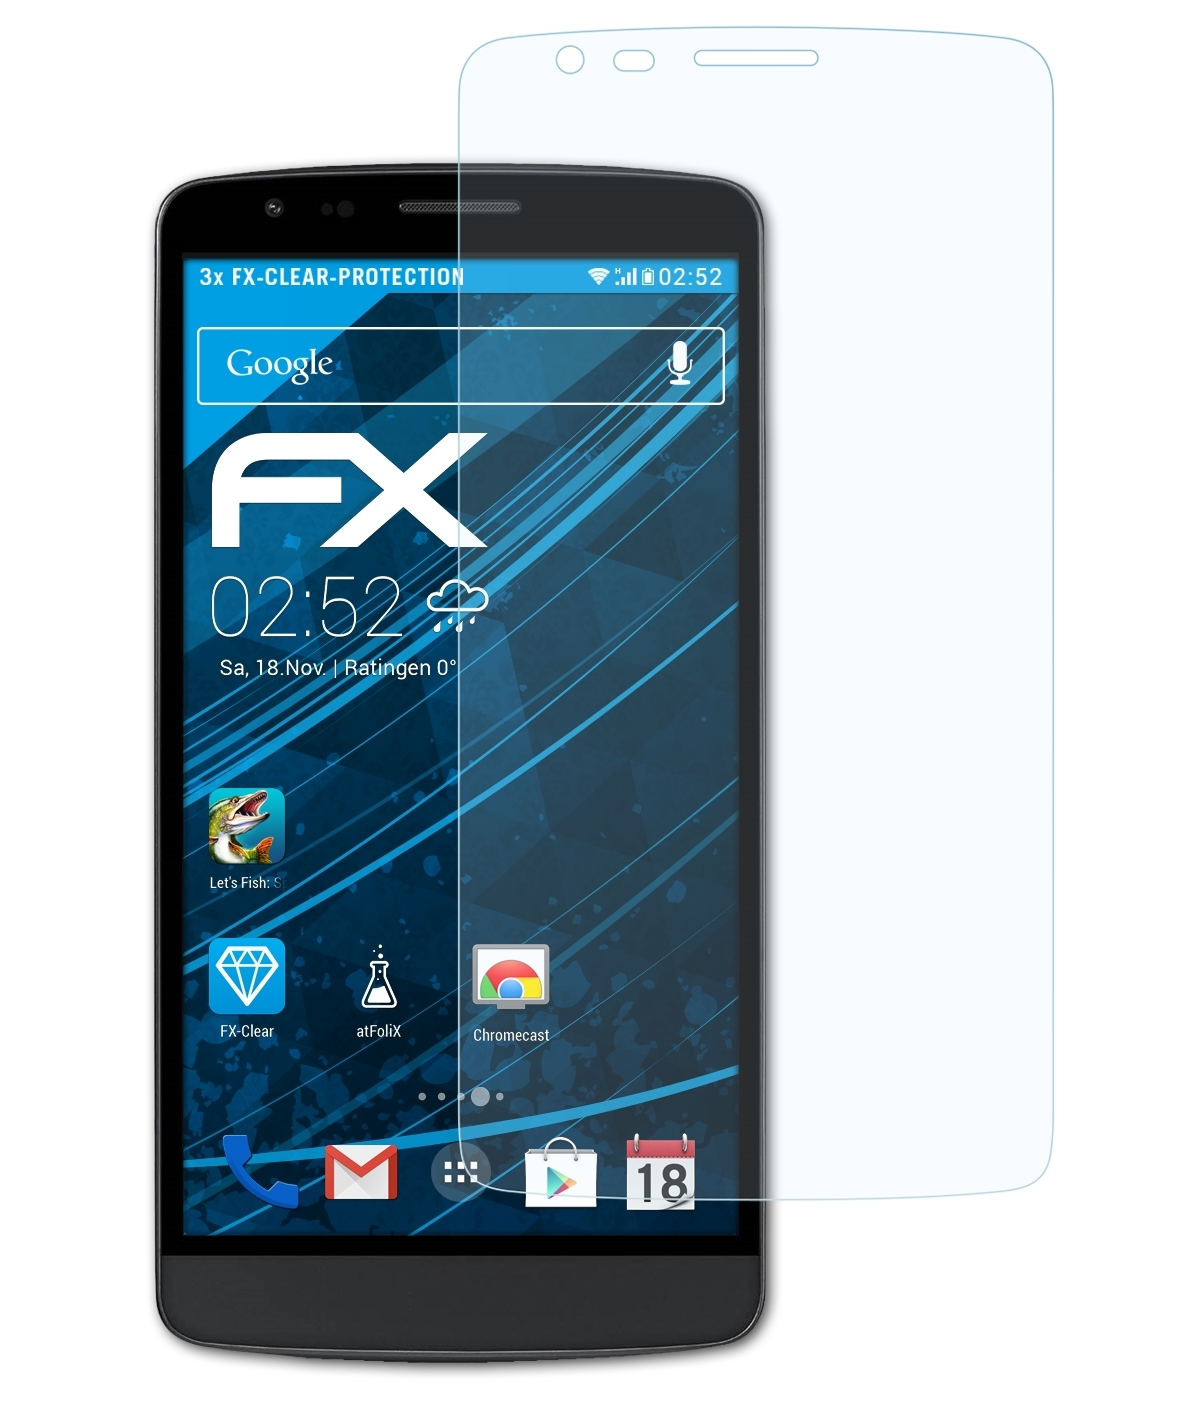 ATFOLIX 3x FX-Clear LG Displayschutz(für G3 Stylus)